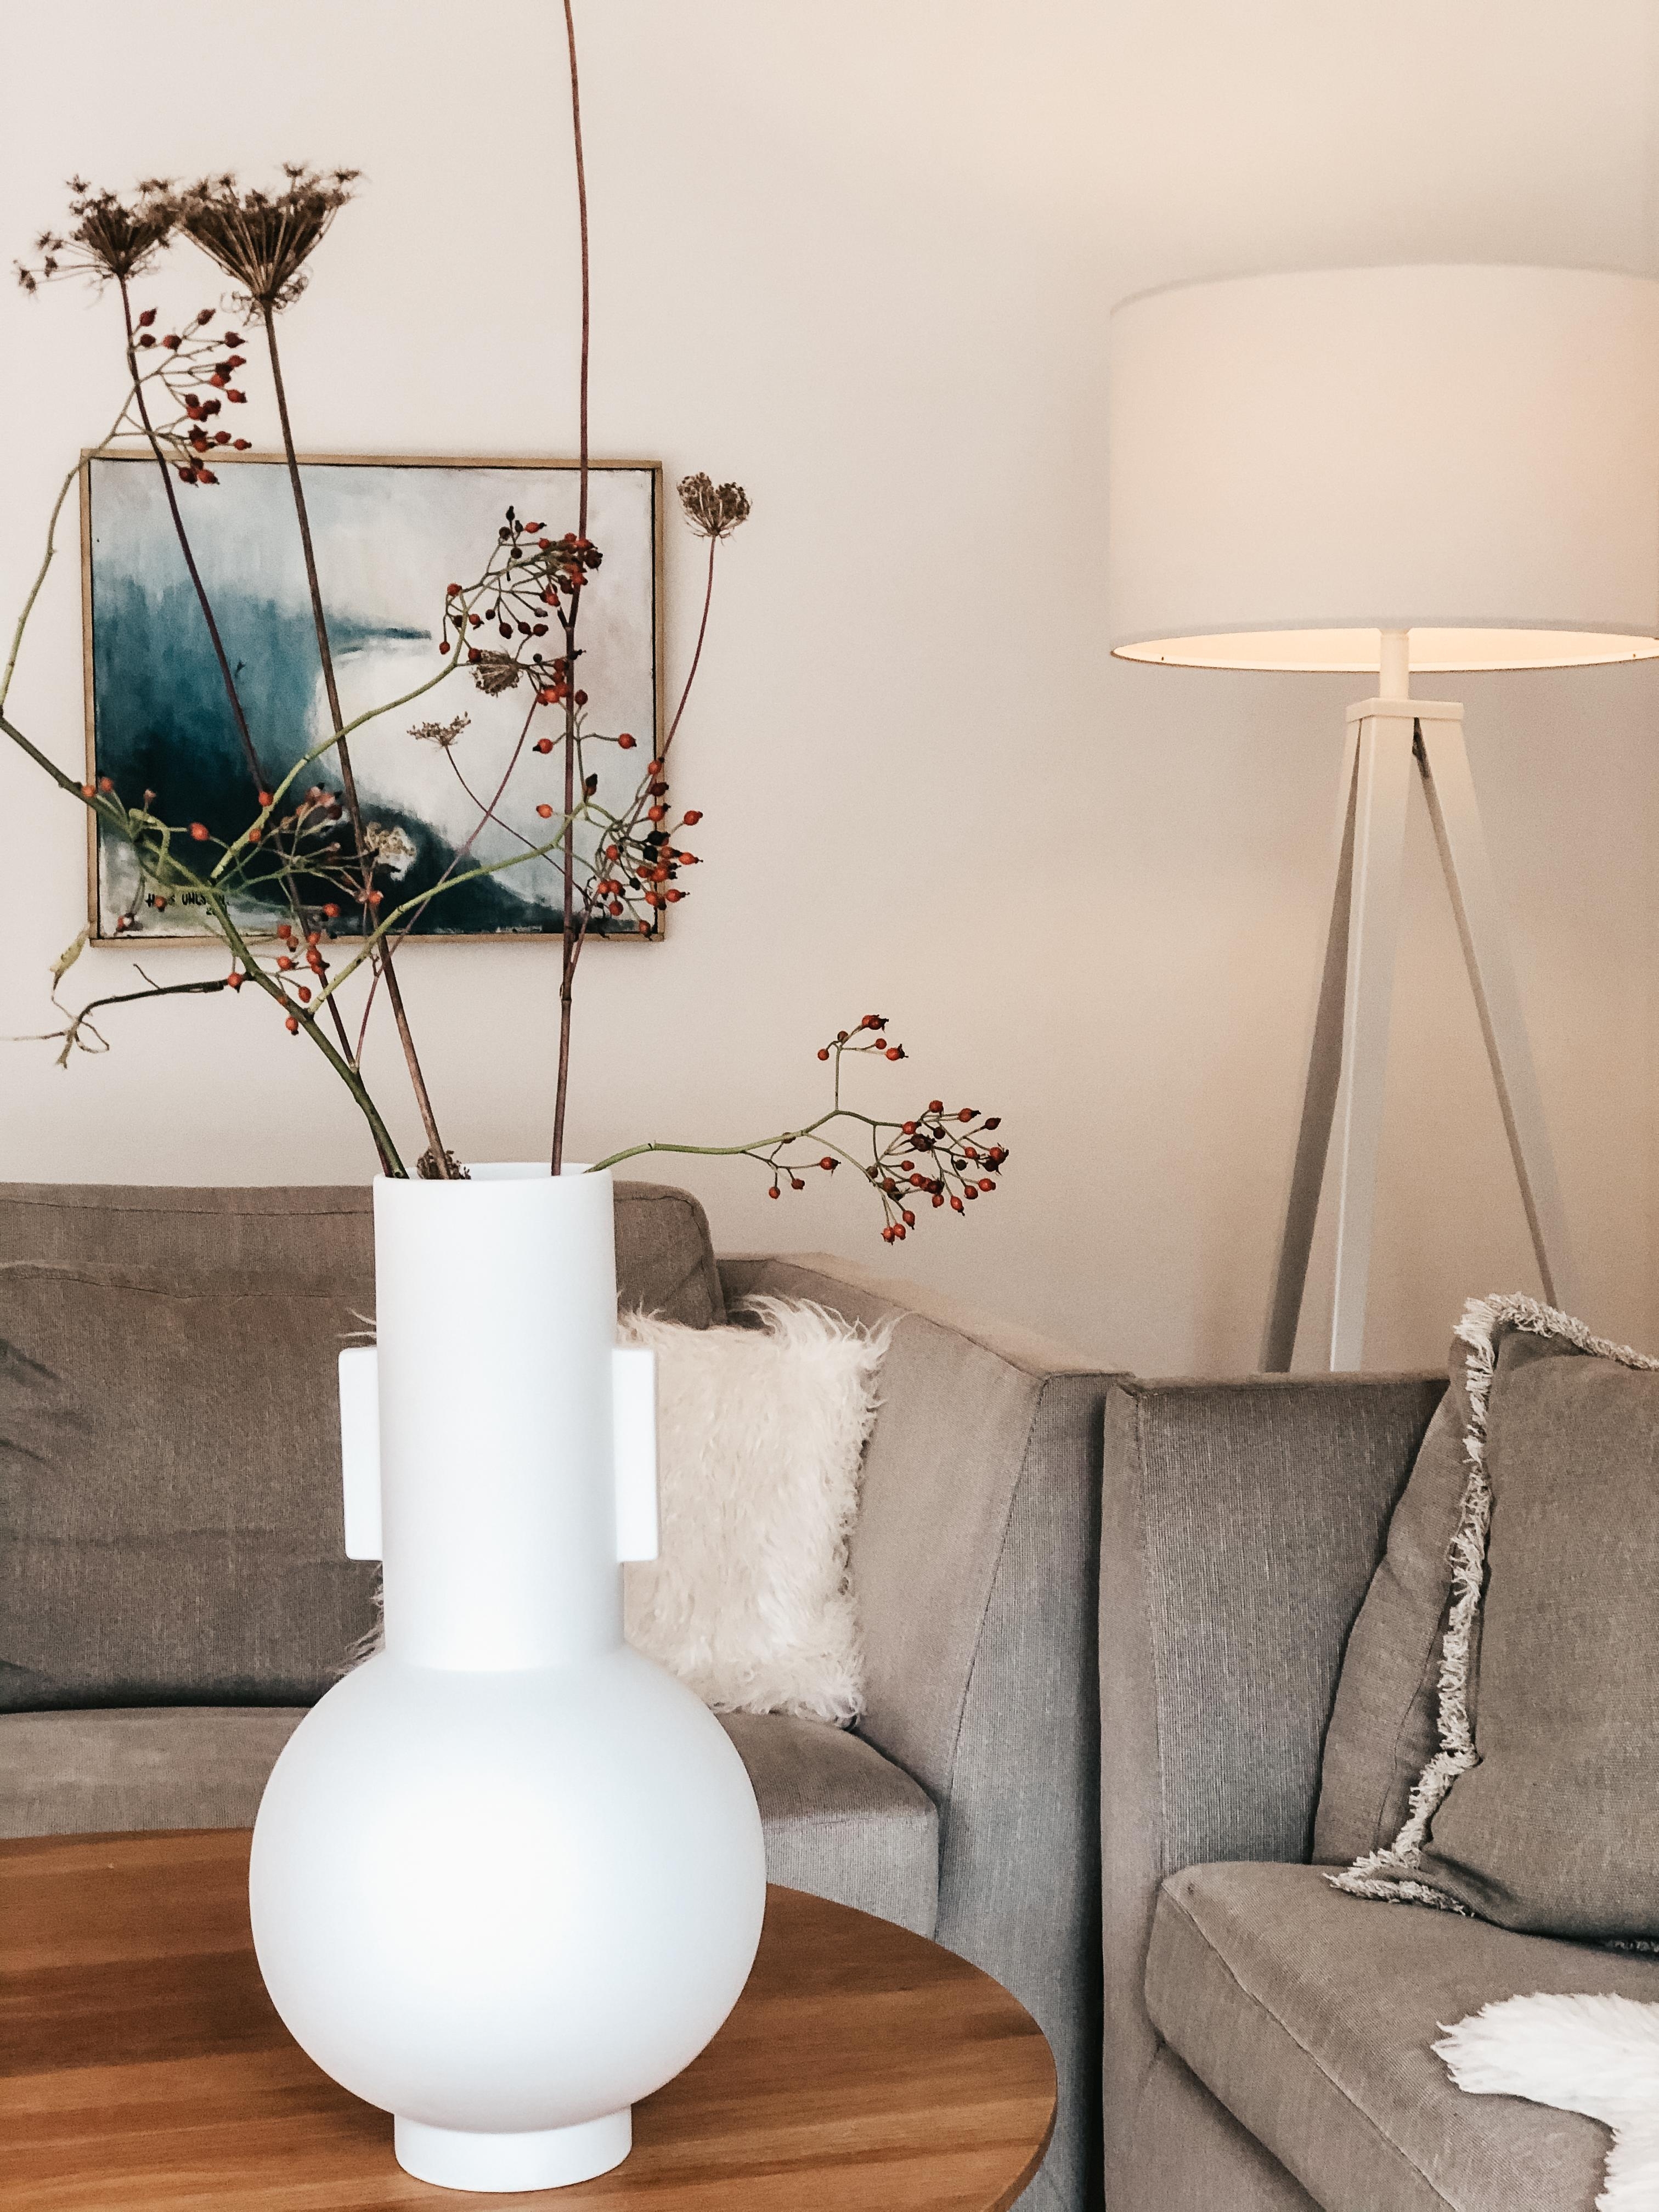 Neues Schätzchen. 😍
#vase #hagebutten #wohnzimmer #livingroom